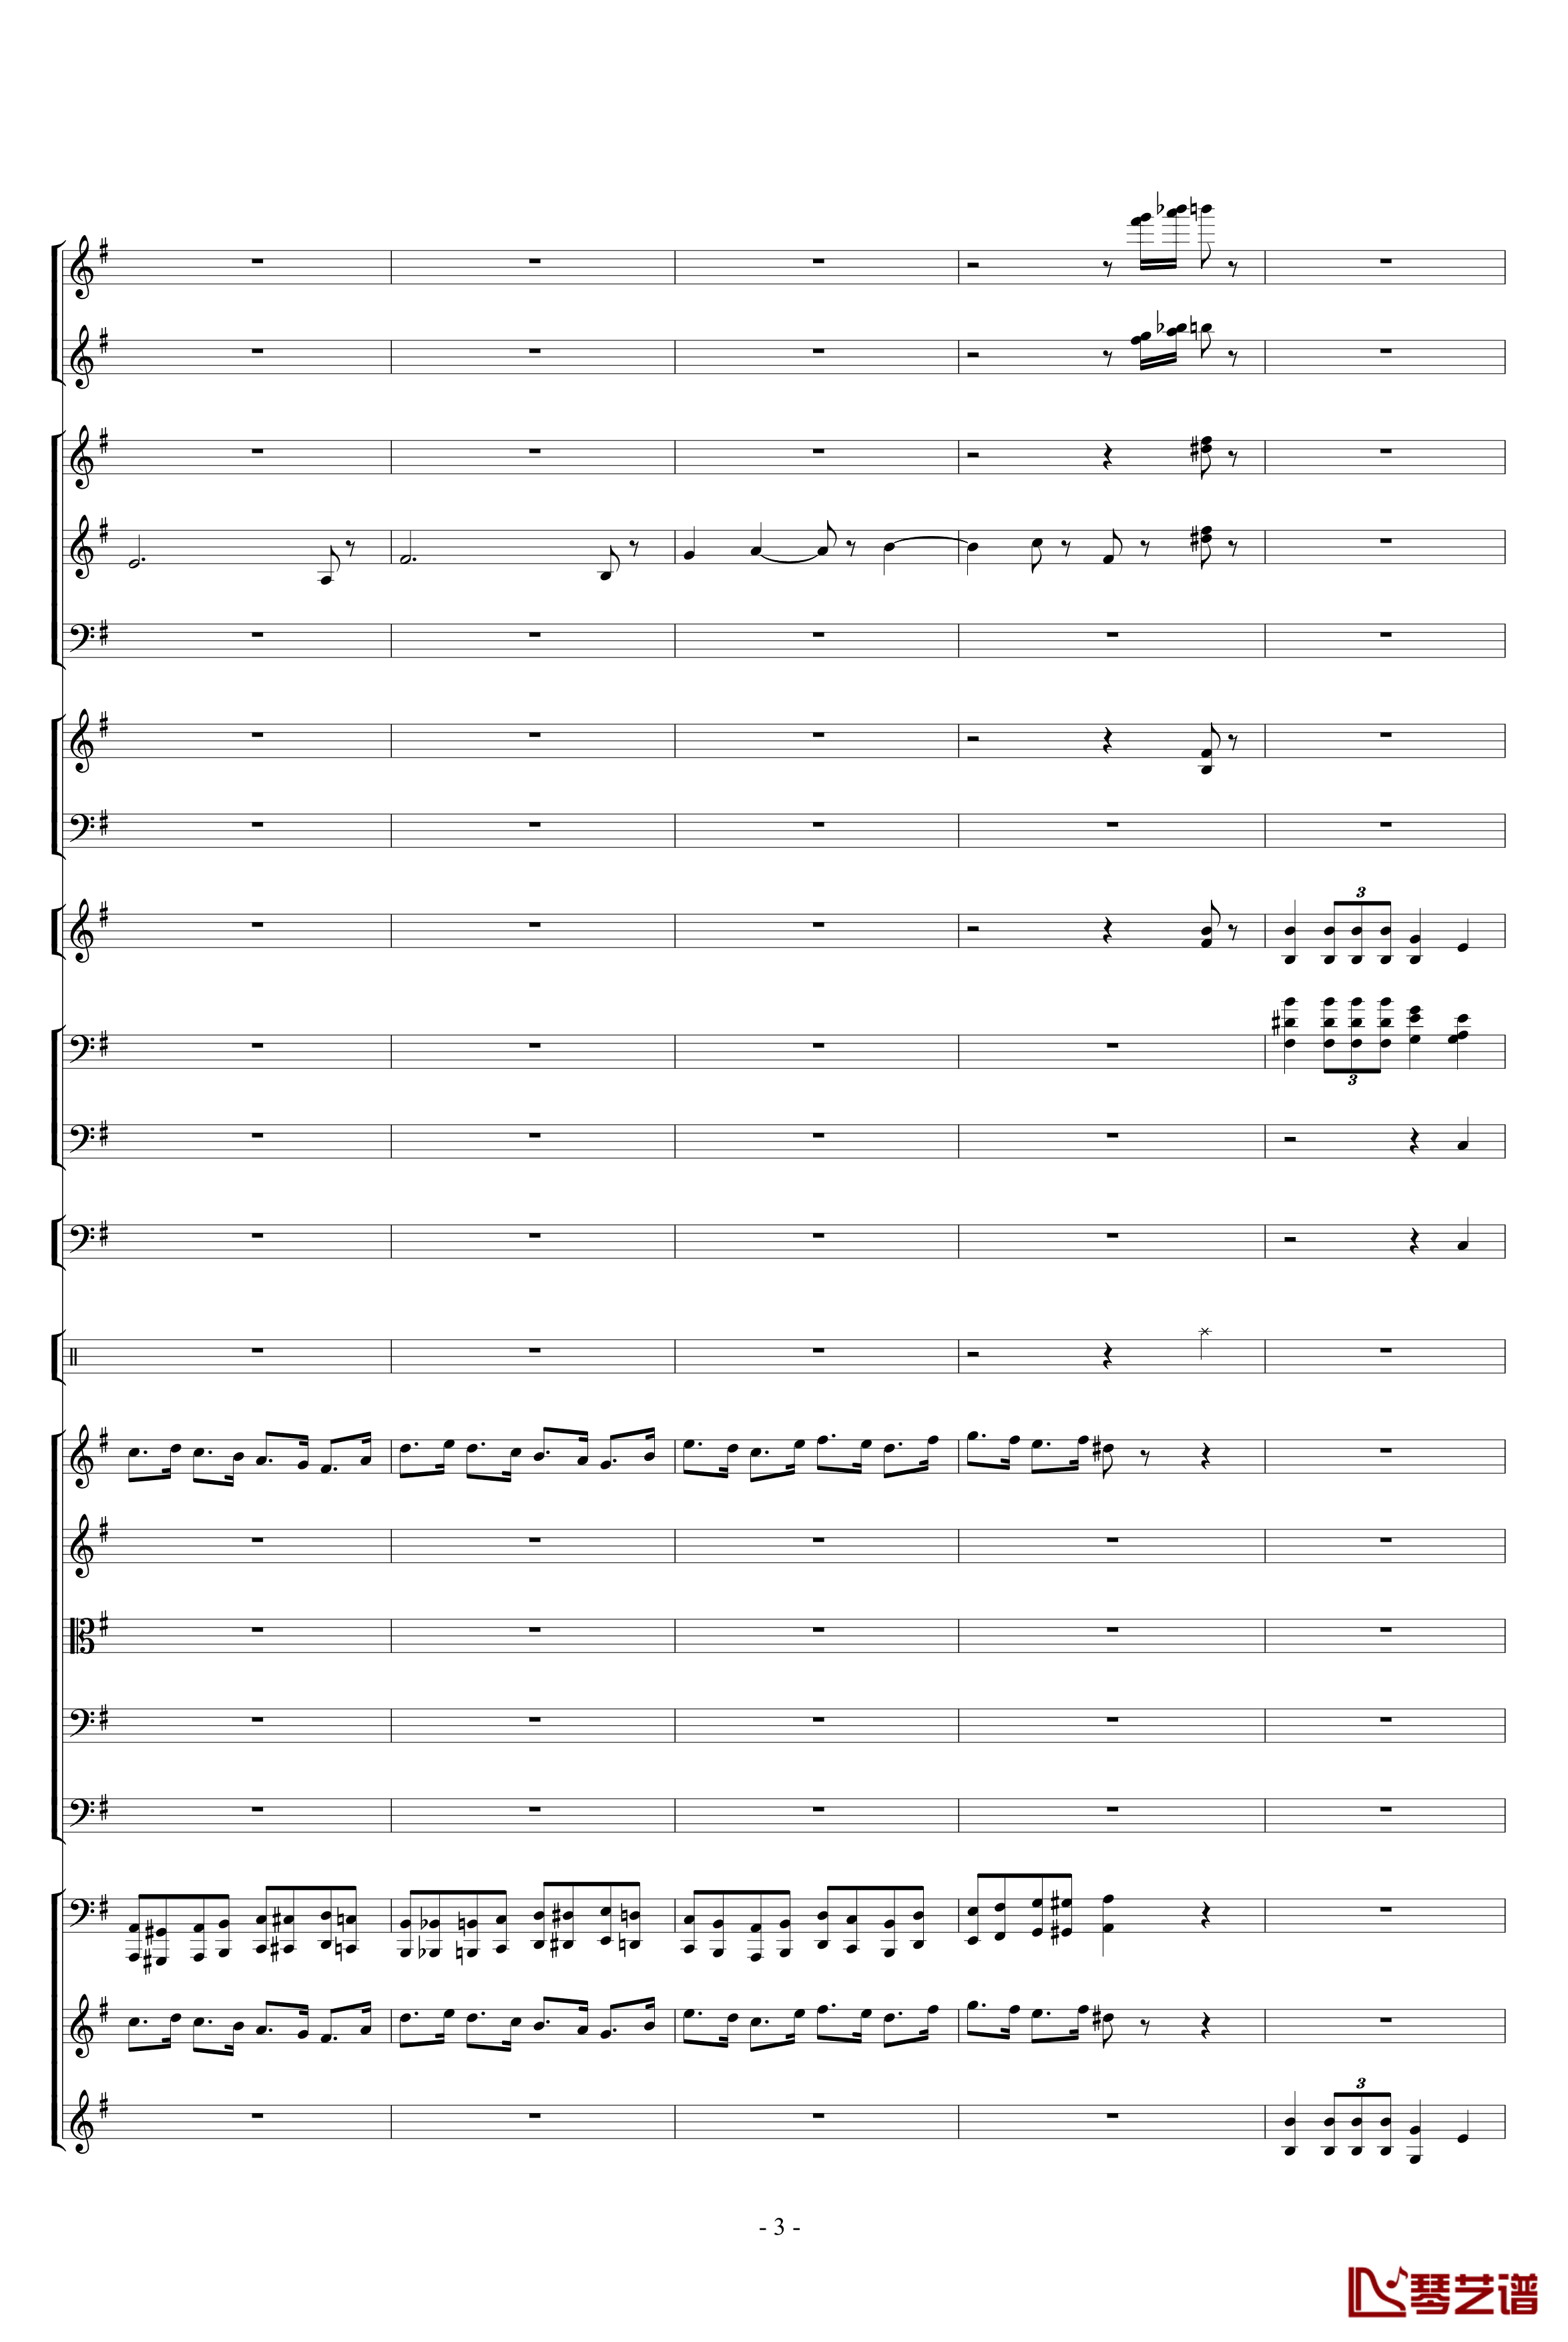 胡桃夹子组曲之进行曲钢琴谱-柴科夫斯基-Peter Ilyich Tchaikovsky3